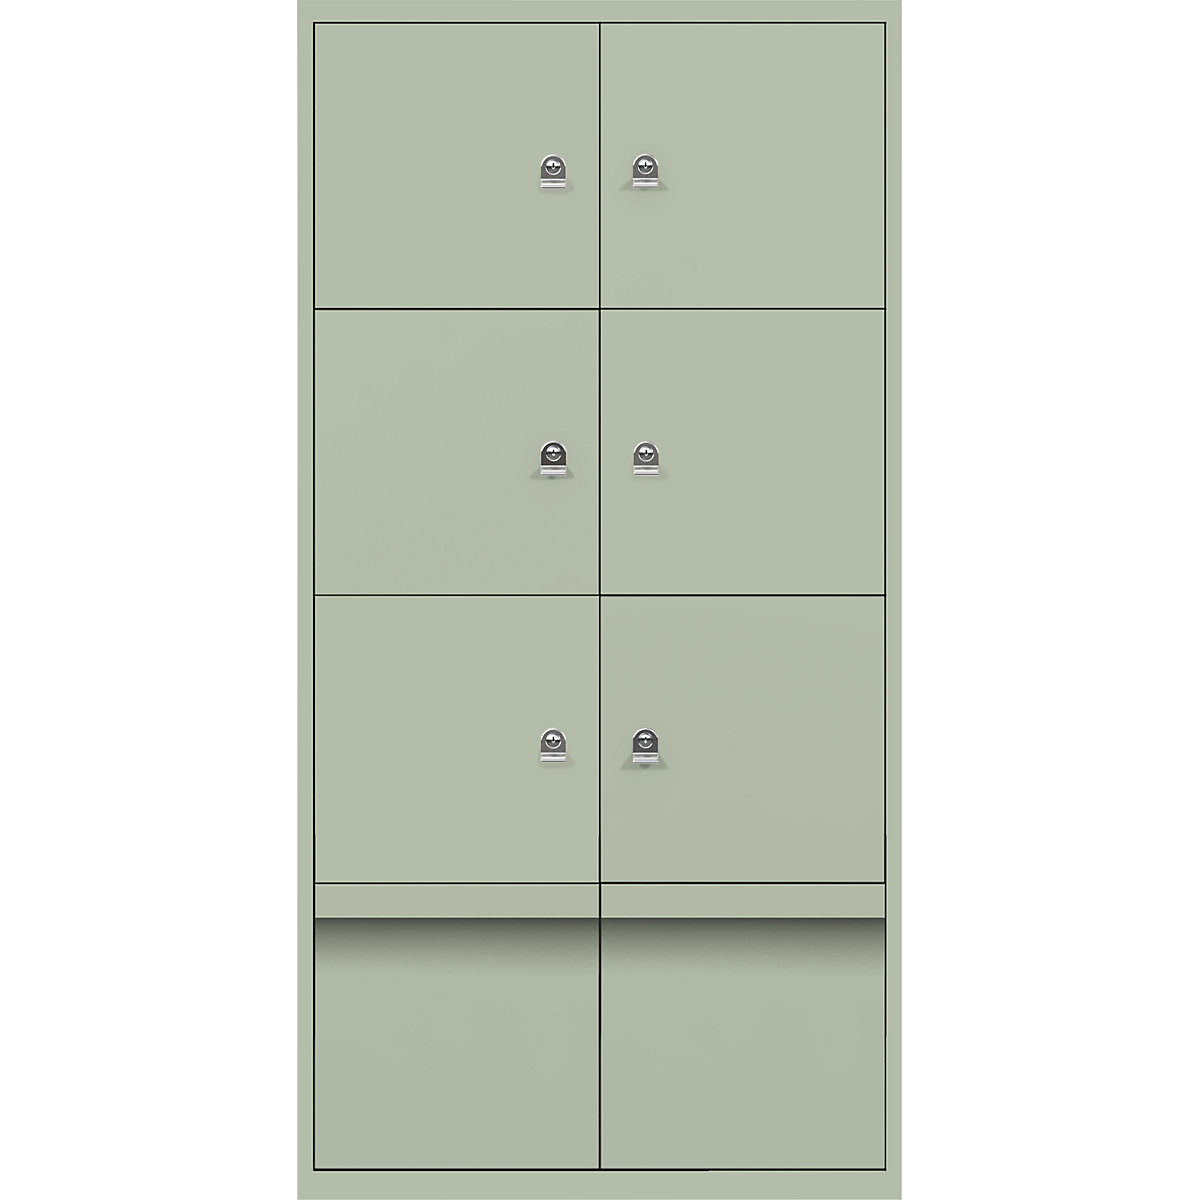 Omara s predelki z zaklepanjem LateralFile™ – BISLEY, 6 predelkov z zaklepanjem in 2 predala, višina po 375 mm, sivo zelene barve-14